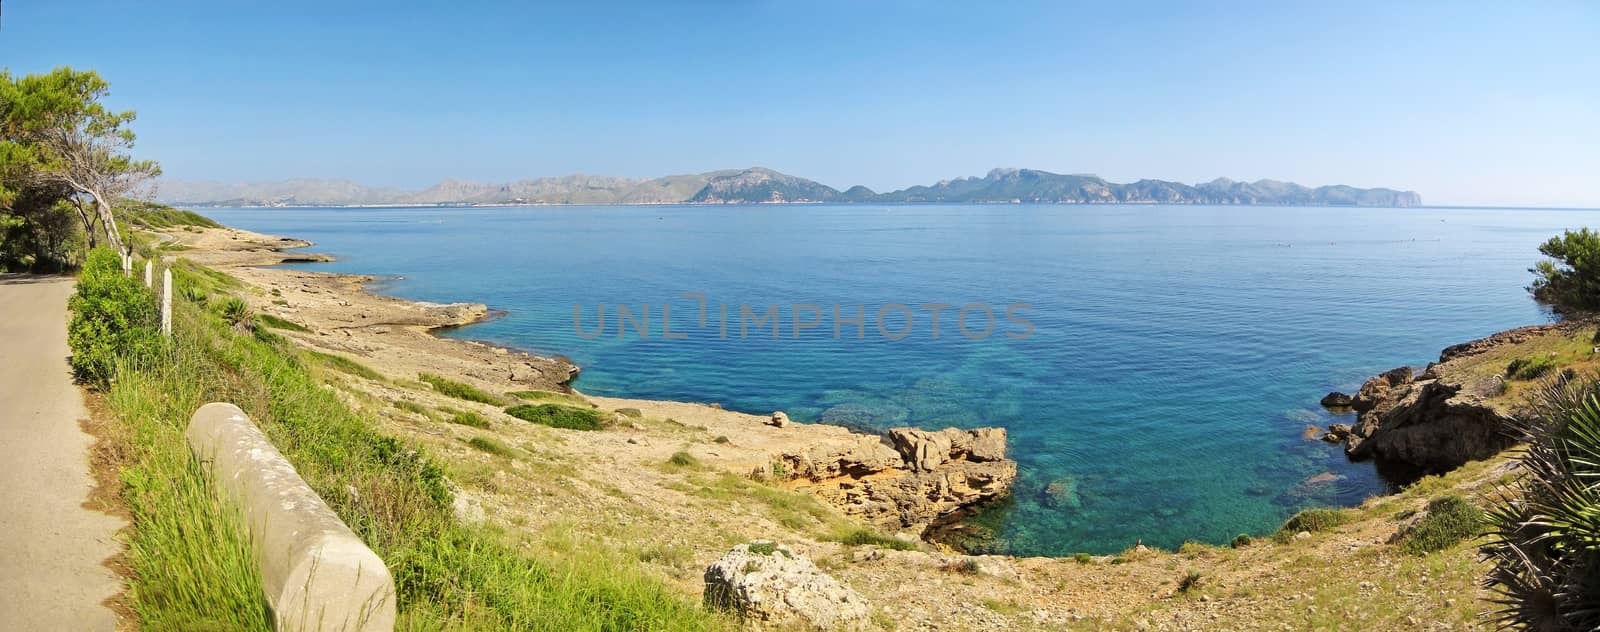 Cliff coast north Majorca, panorama by aldorado